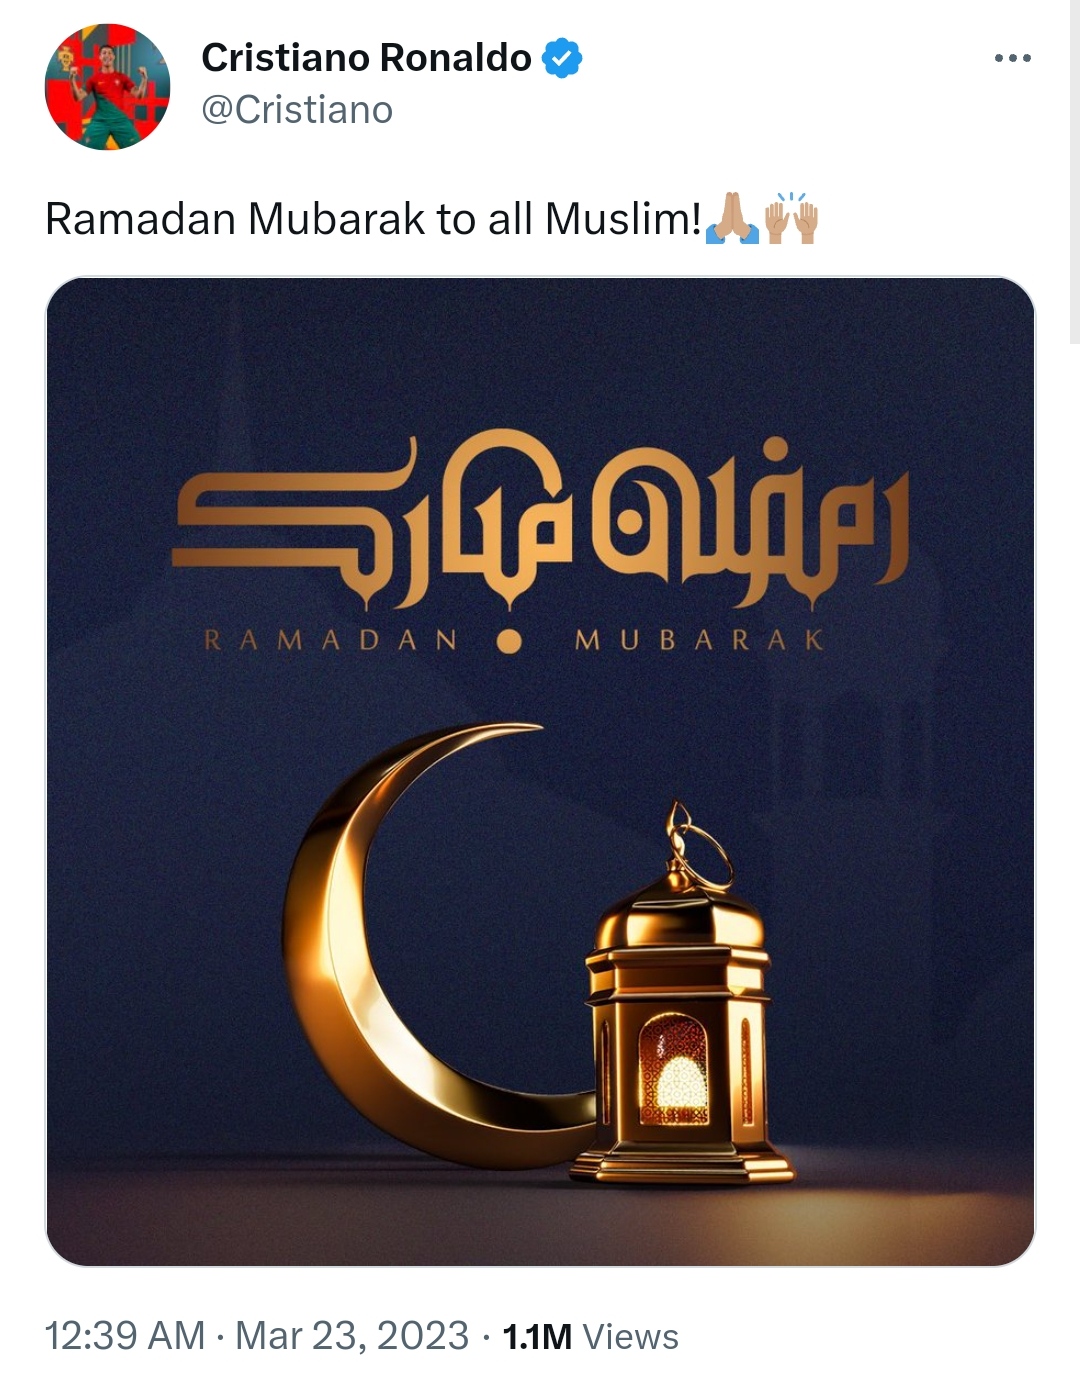 کریستیانو رونالدو و تبریک فرا رسیدن ماه رمضان